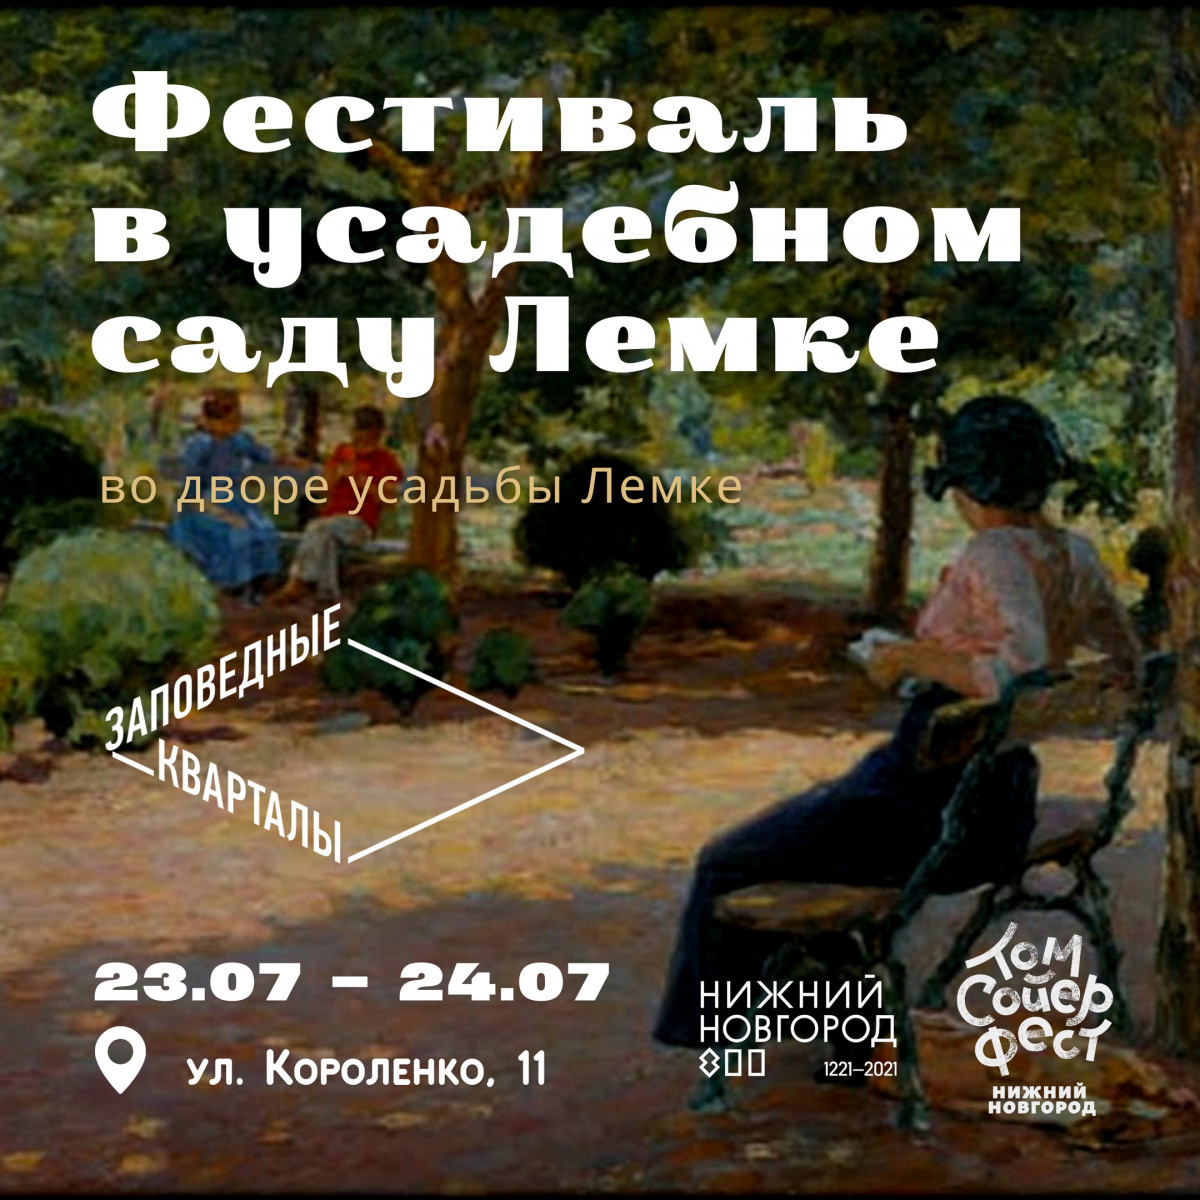 Нижегородцев приглашают на фестиваль в усадебном саду Лемке